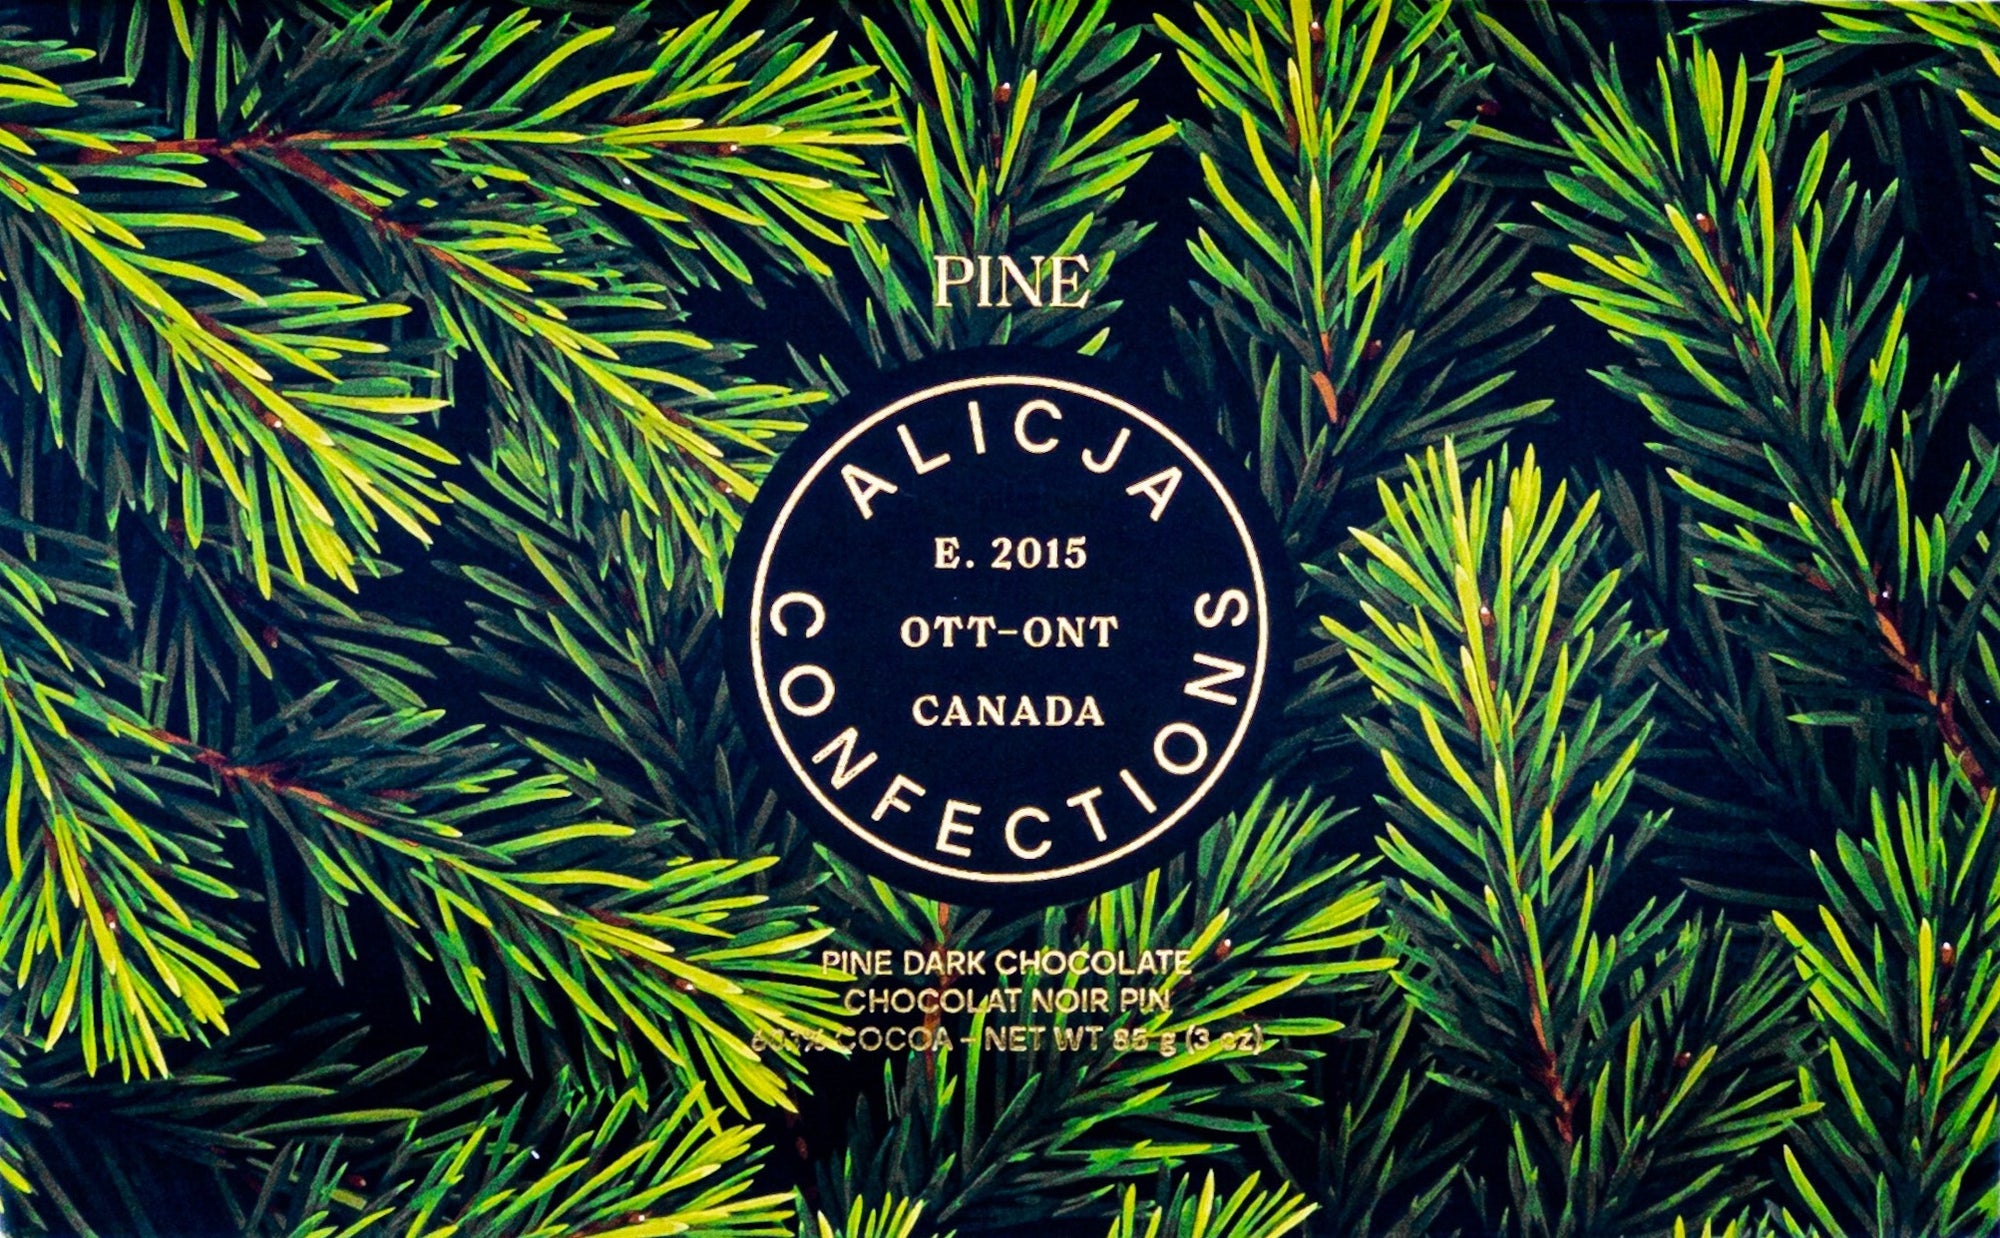 Pine • Pine 60.1% Dark Chocolate